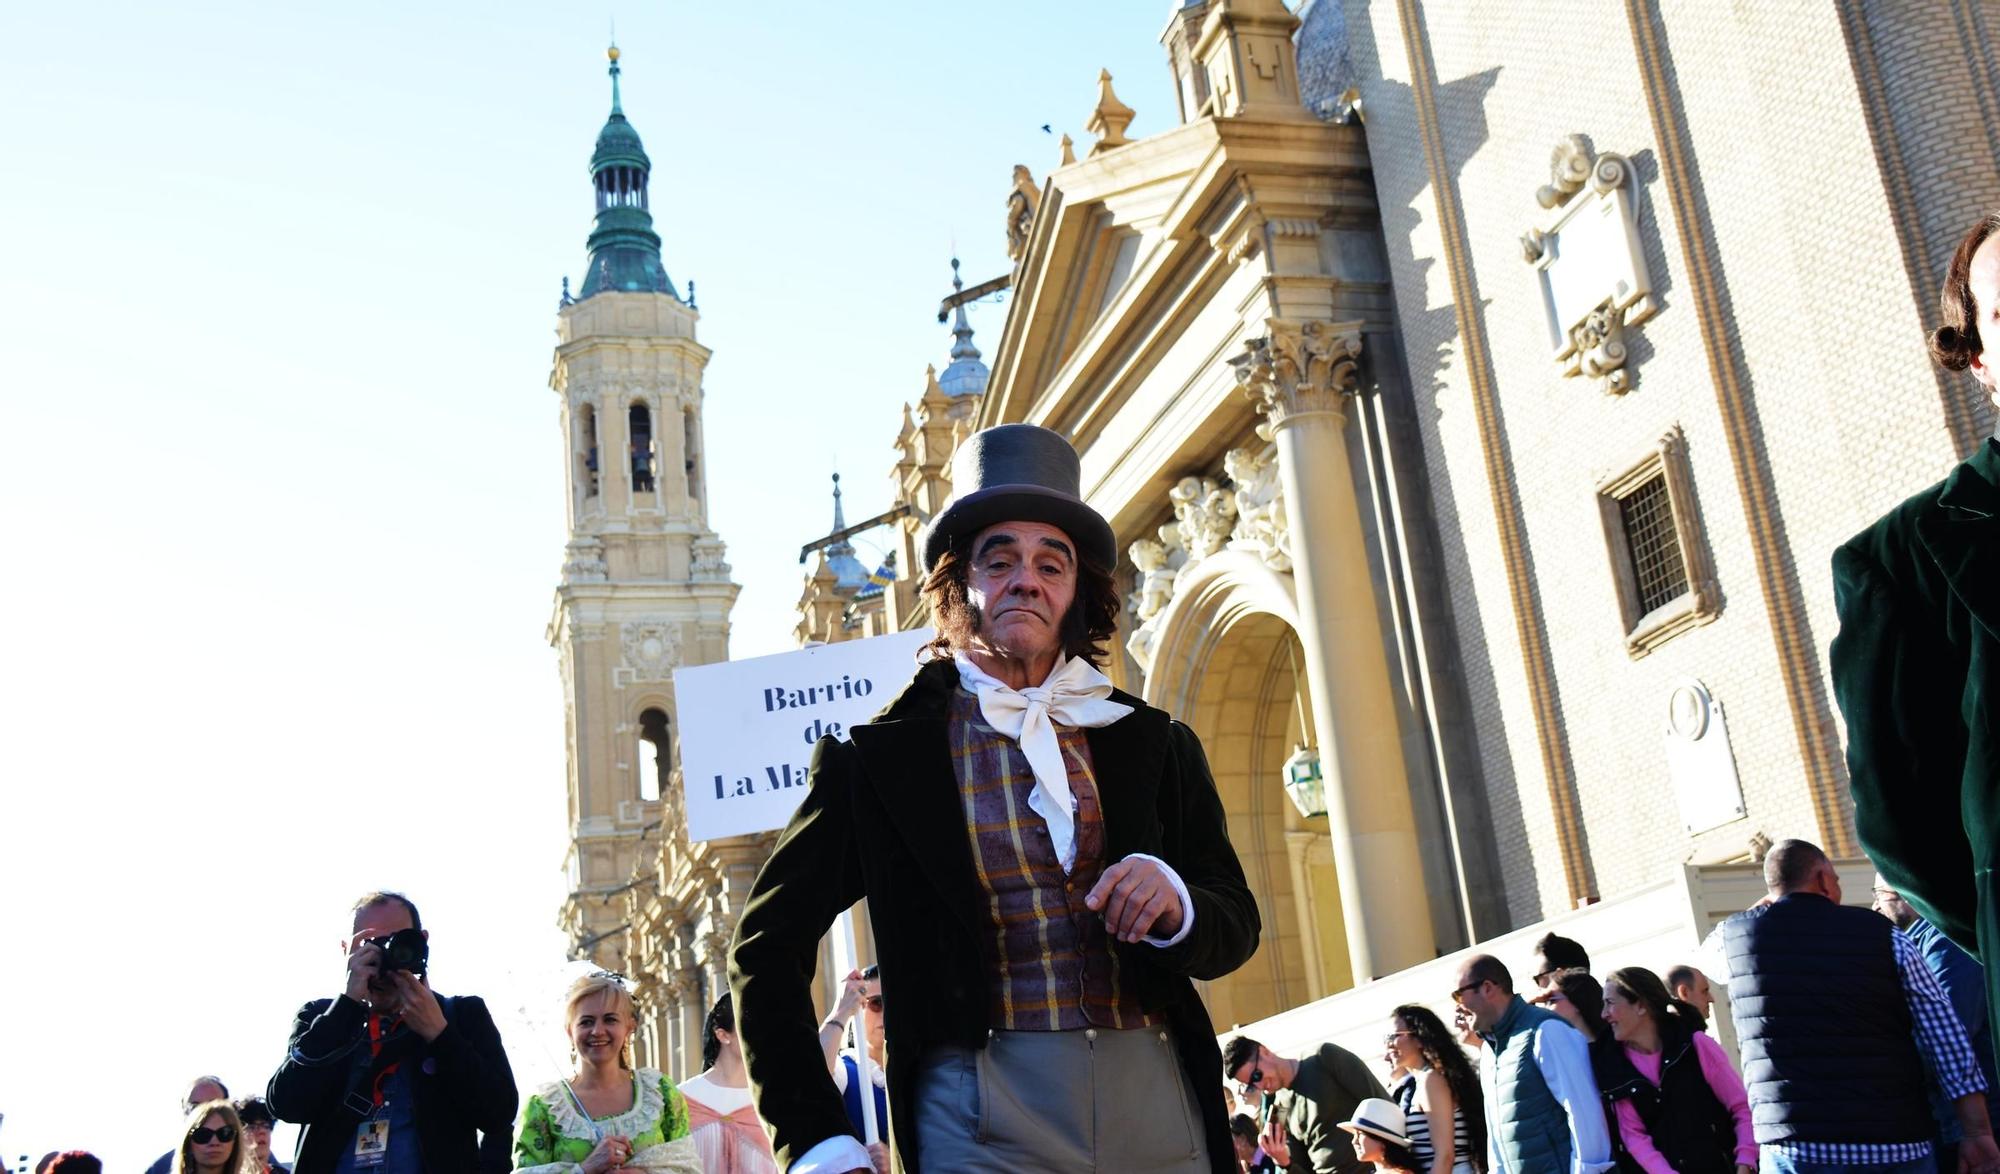 EN IMÁGENES | El desfile de las Fiestas Goyescas llena de alegría las calles de Zaragoza